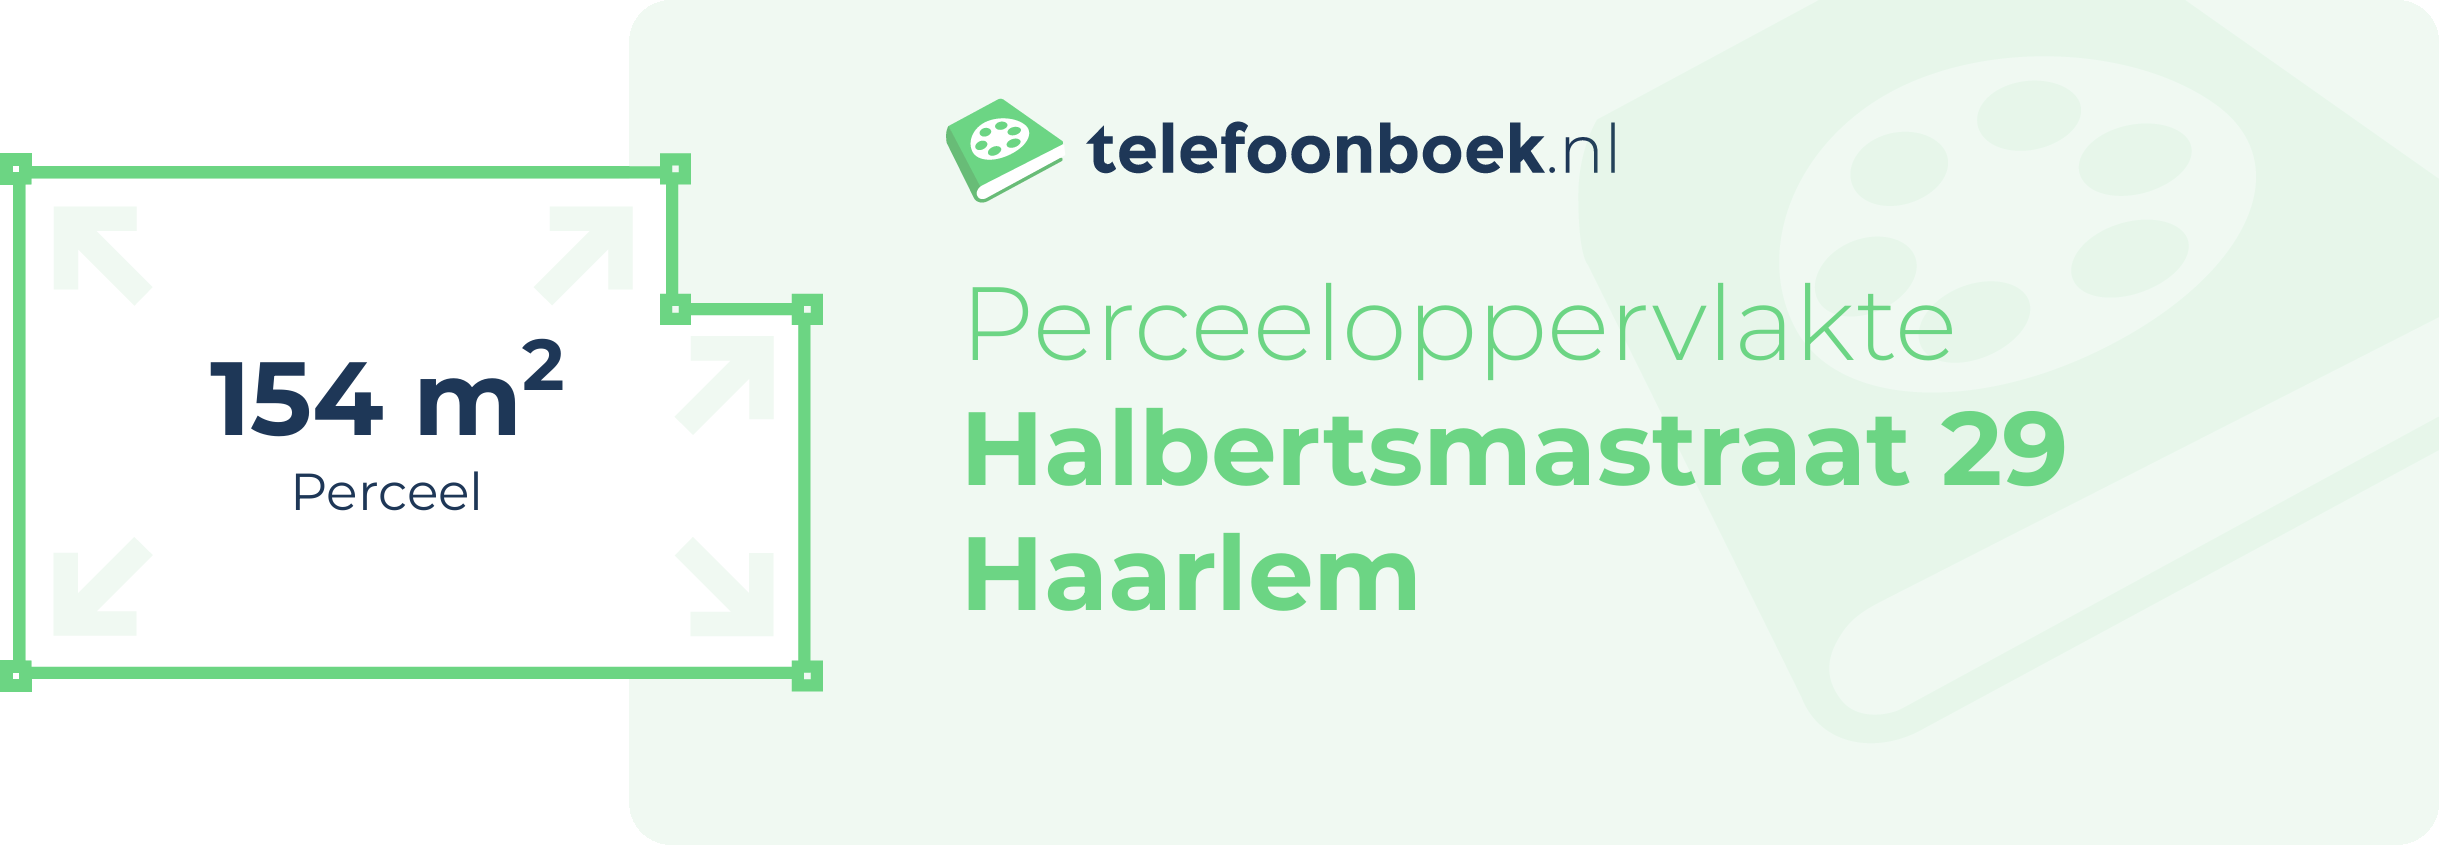 Perceeloppervlakte Halbertsmastraat 29 Haarlem